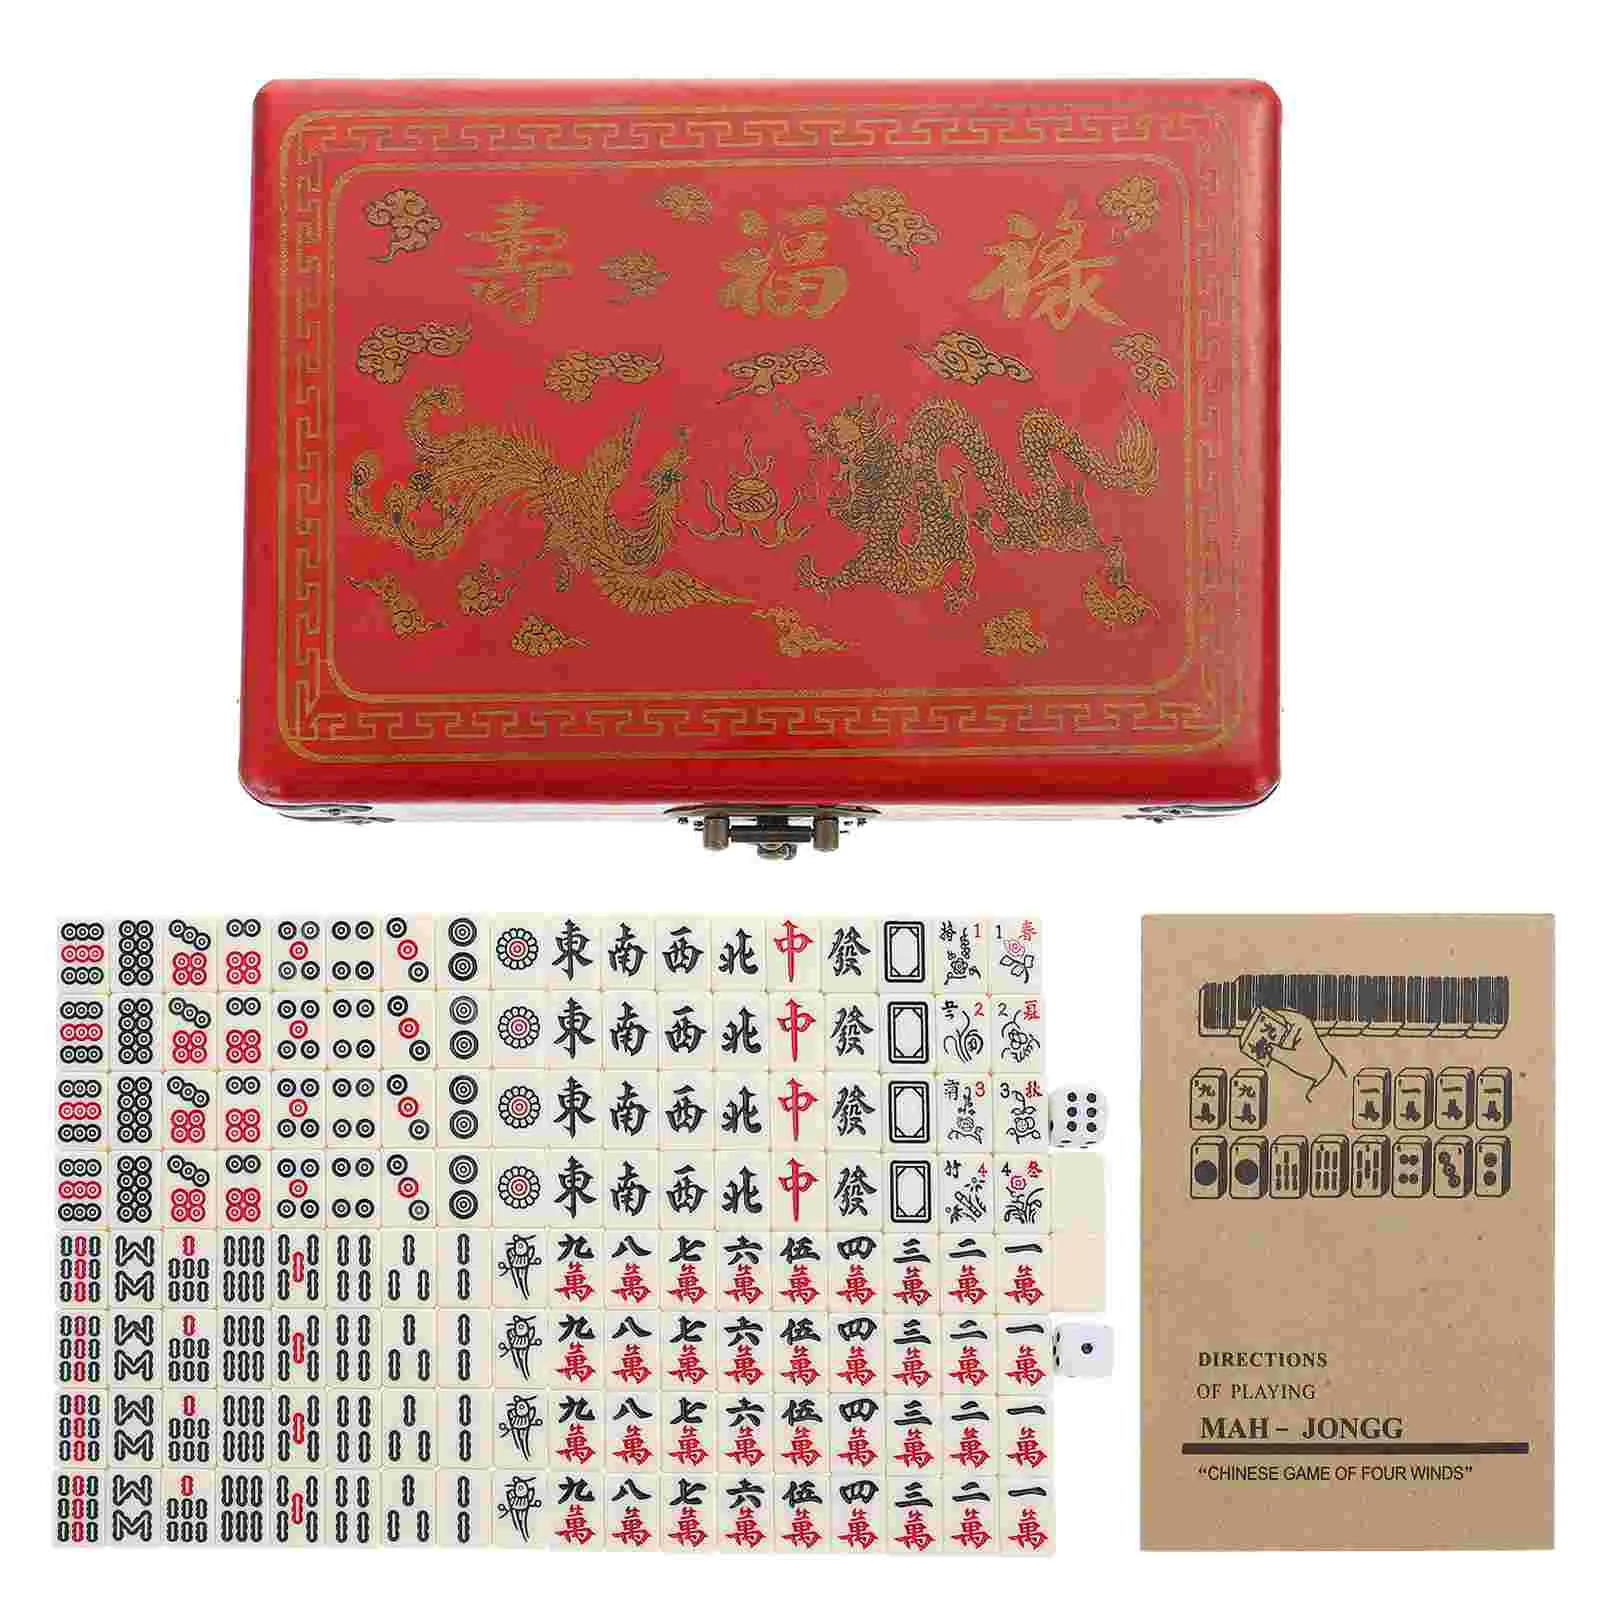 

Портативный телефон, оригинальный практичный телефон с коробкой, китайская игра в маджонг для путешествий, Домашняя версия, 1 комплект